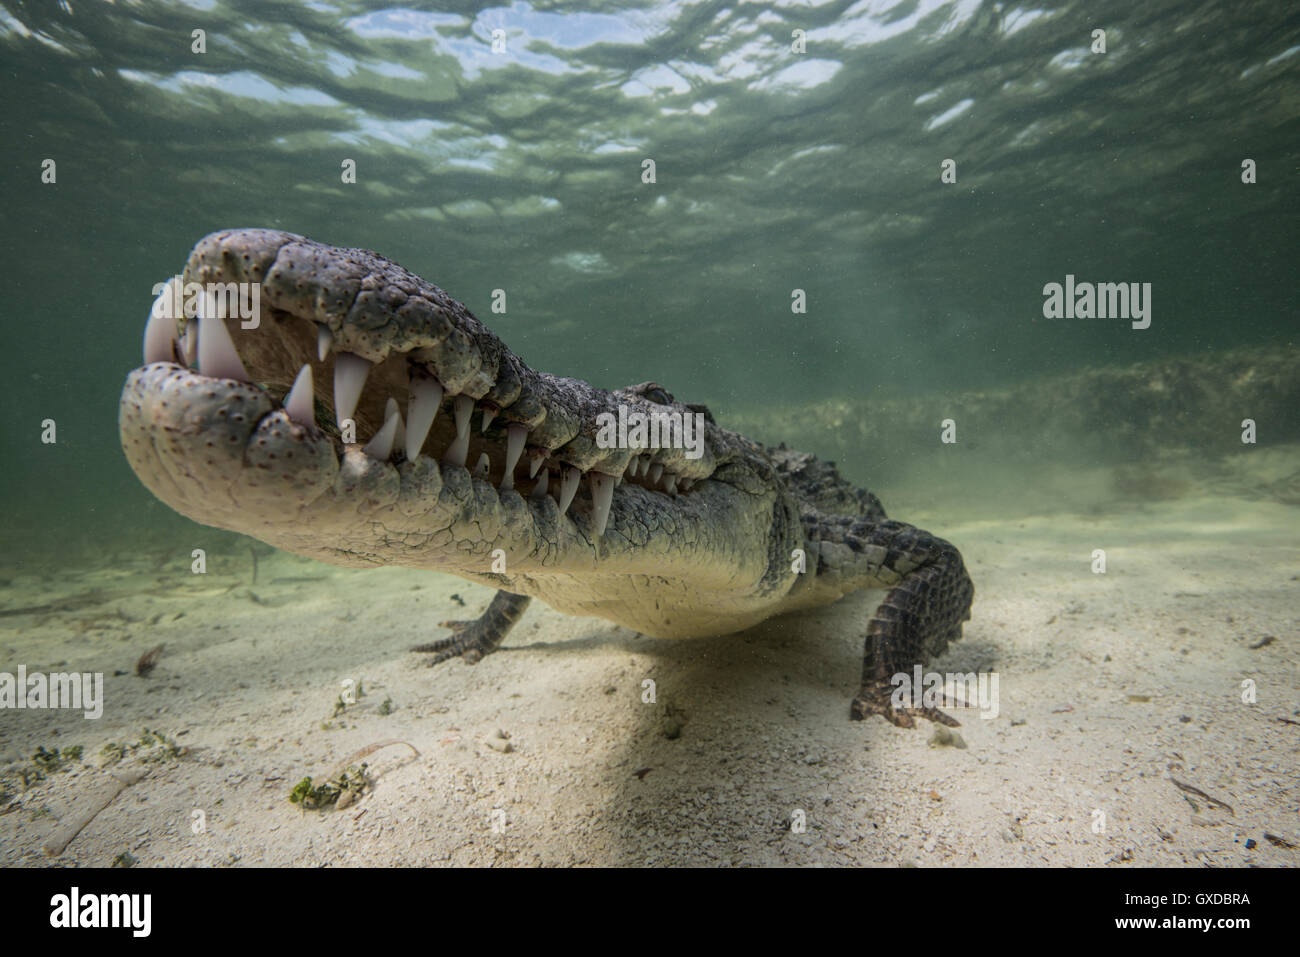 Territoriale coccodrillo americano (Crocodylus acutus) sul fondale, Chinchorro banche, Messico Foto Stock